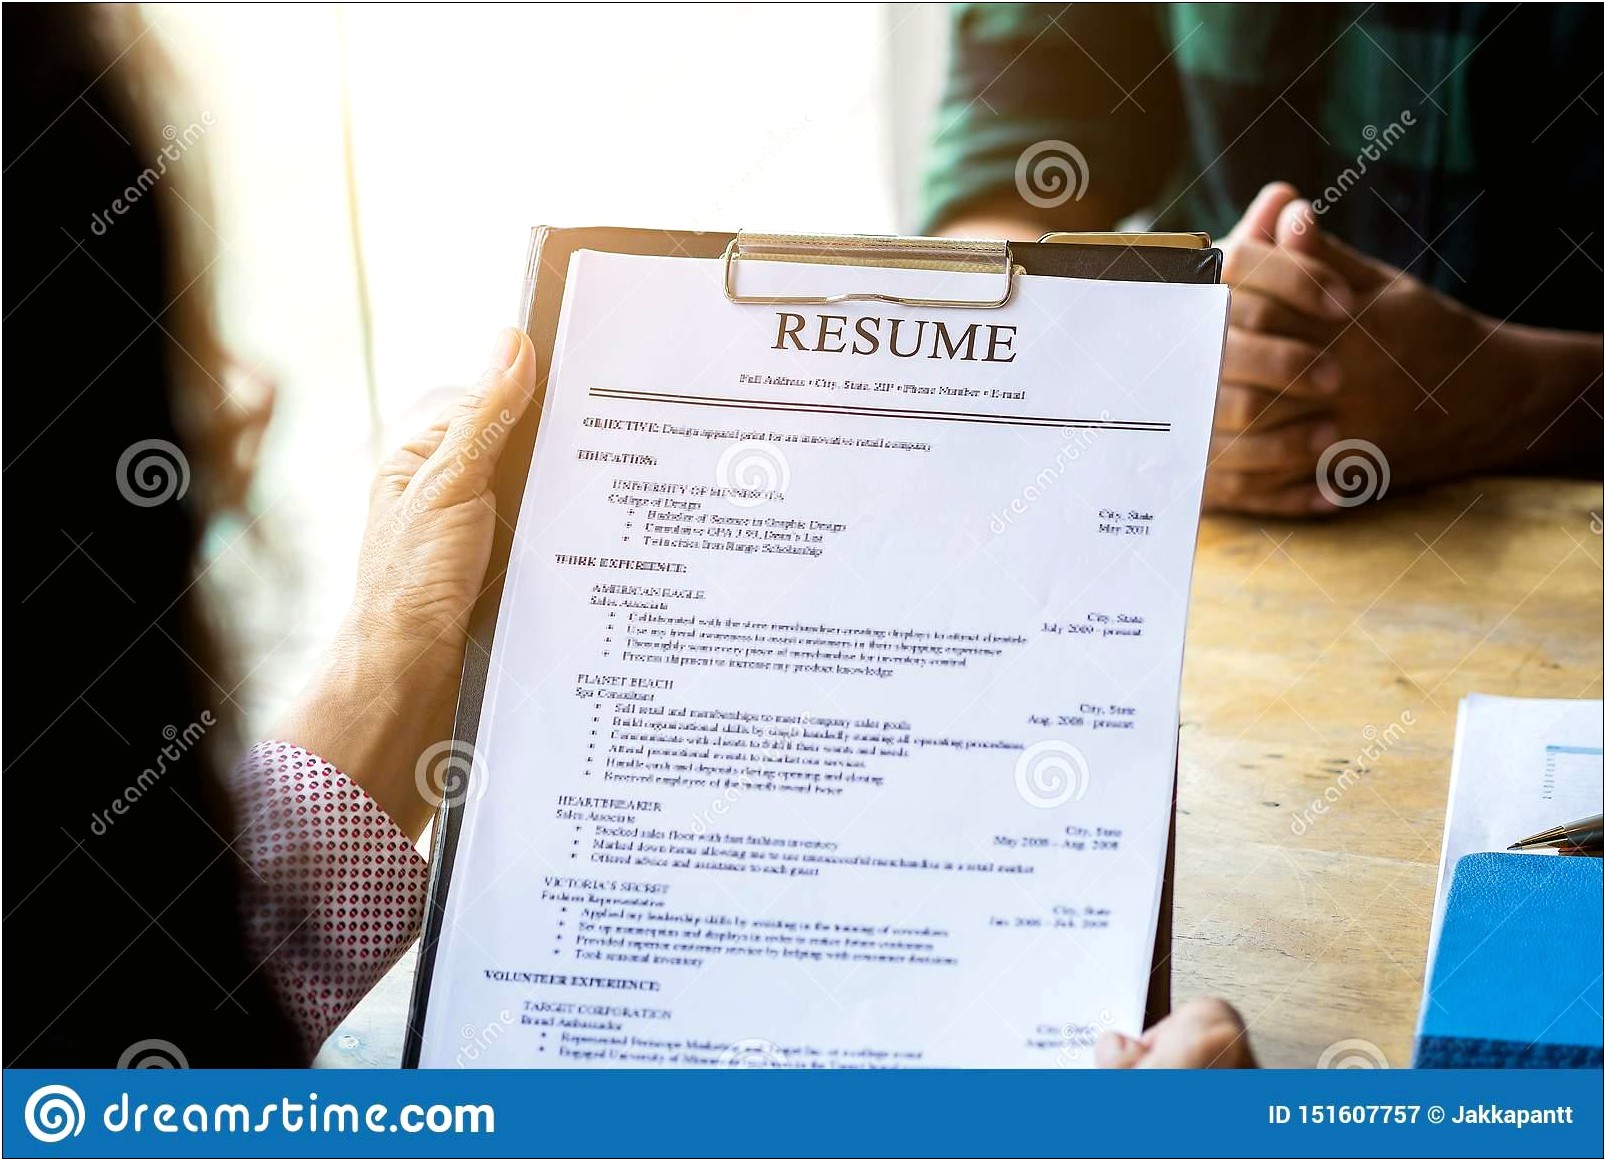 Describing A Job On A Resume